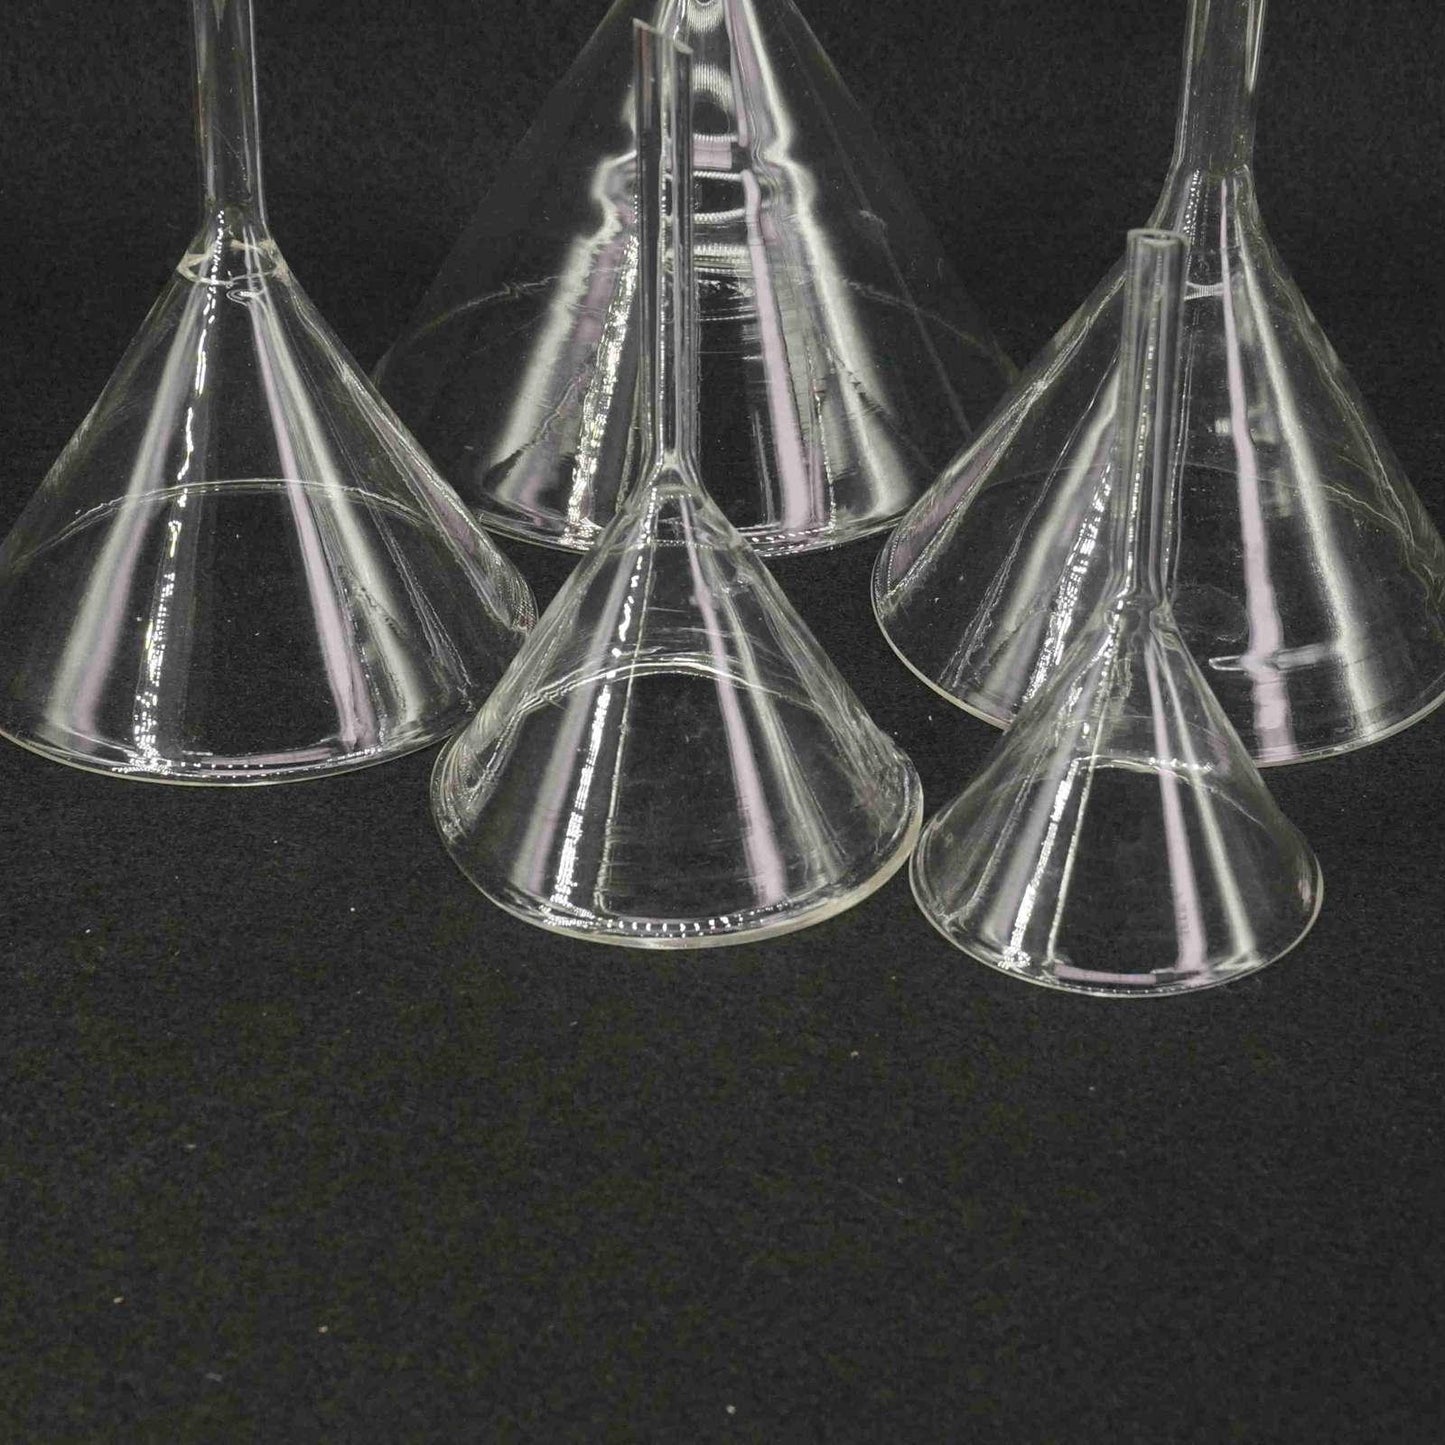 40mm-50mm-60mm-75mm-80mm-90mm-100mm-120mm-lab7th-Miniature-Lab-Glass-Funnel-Borosilicate-Glassware-Triangle-Funnel